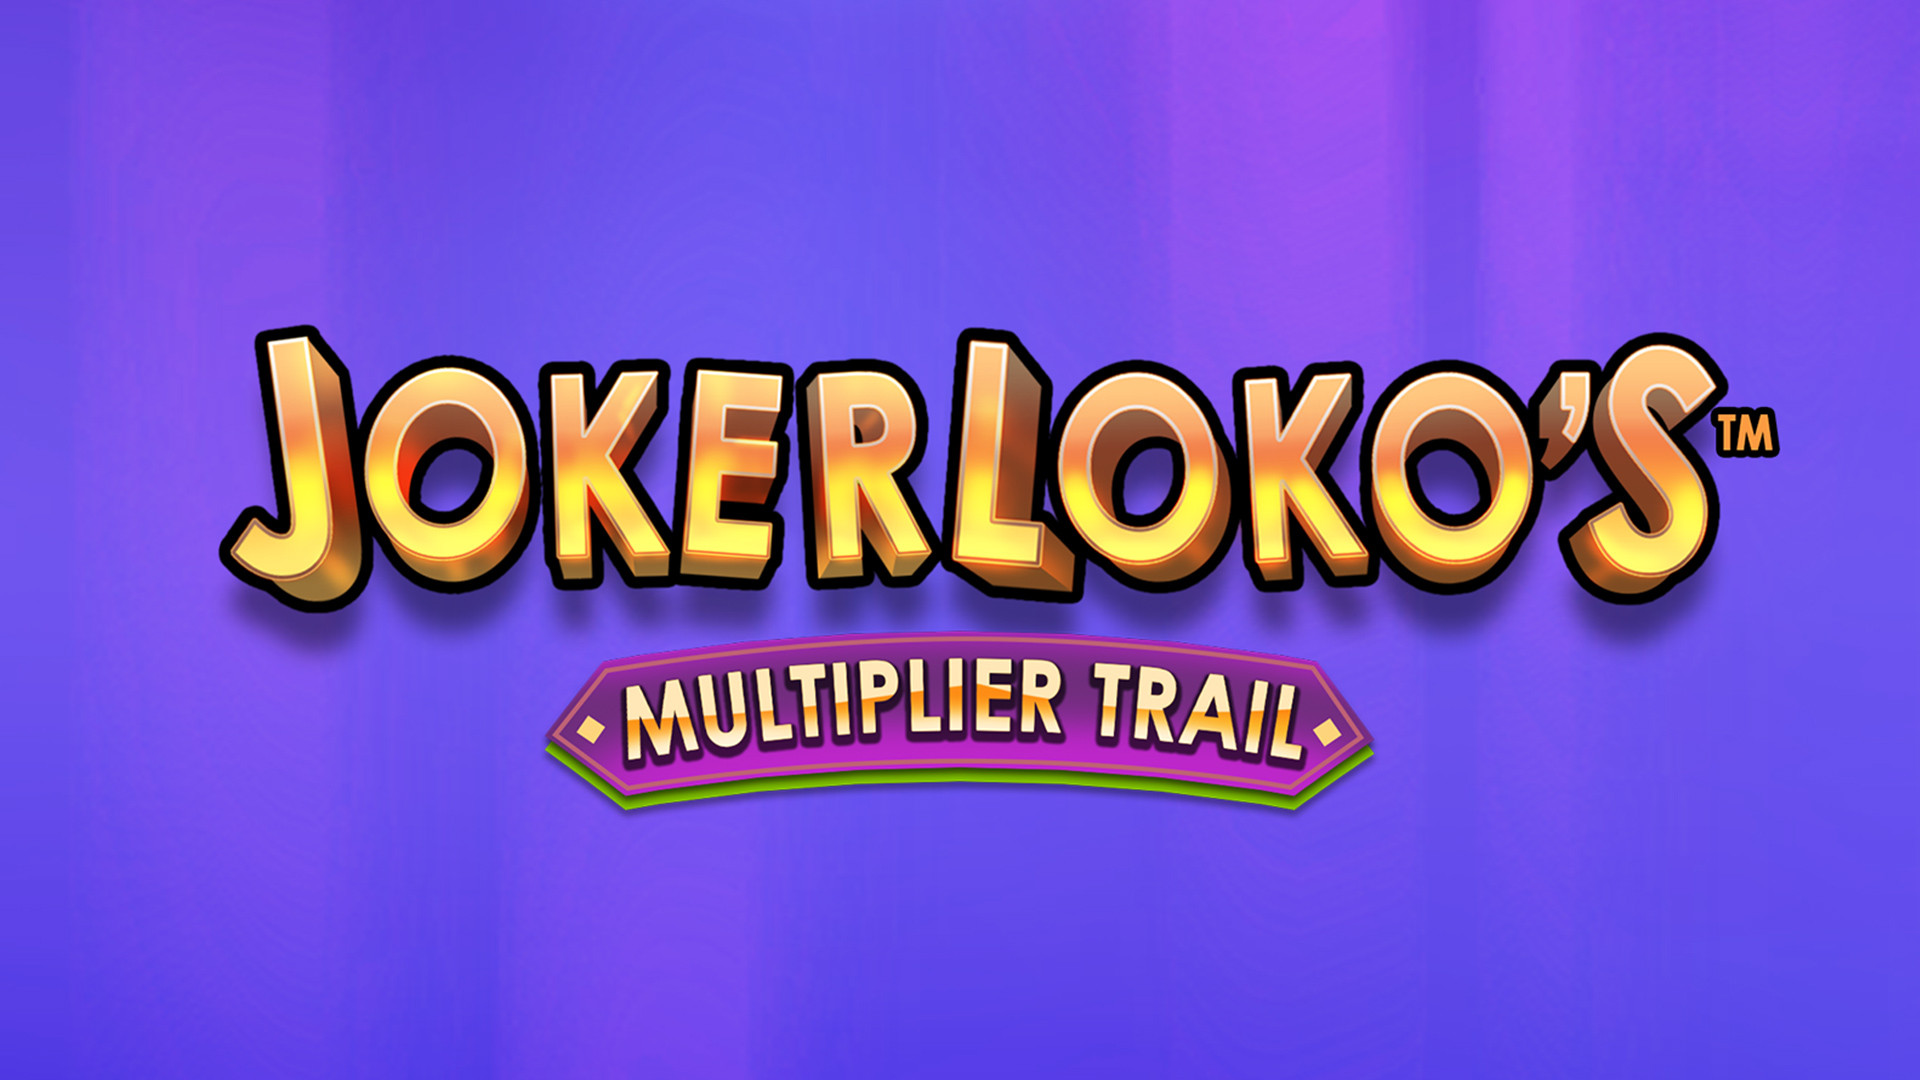 Joker Loko's Multiplier Trail